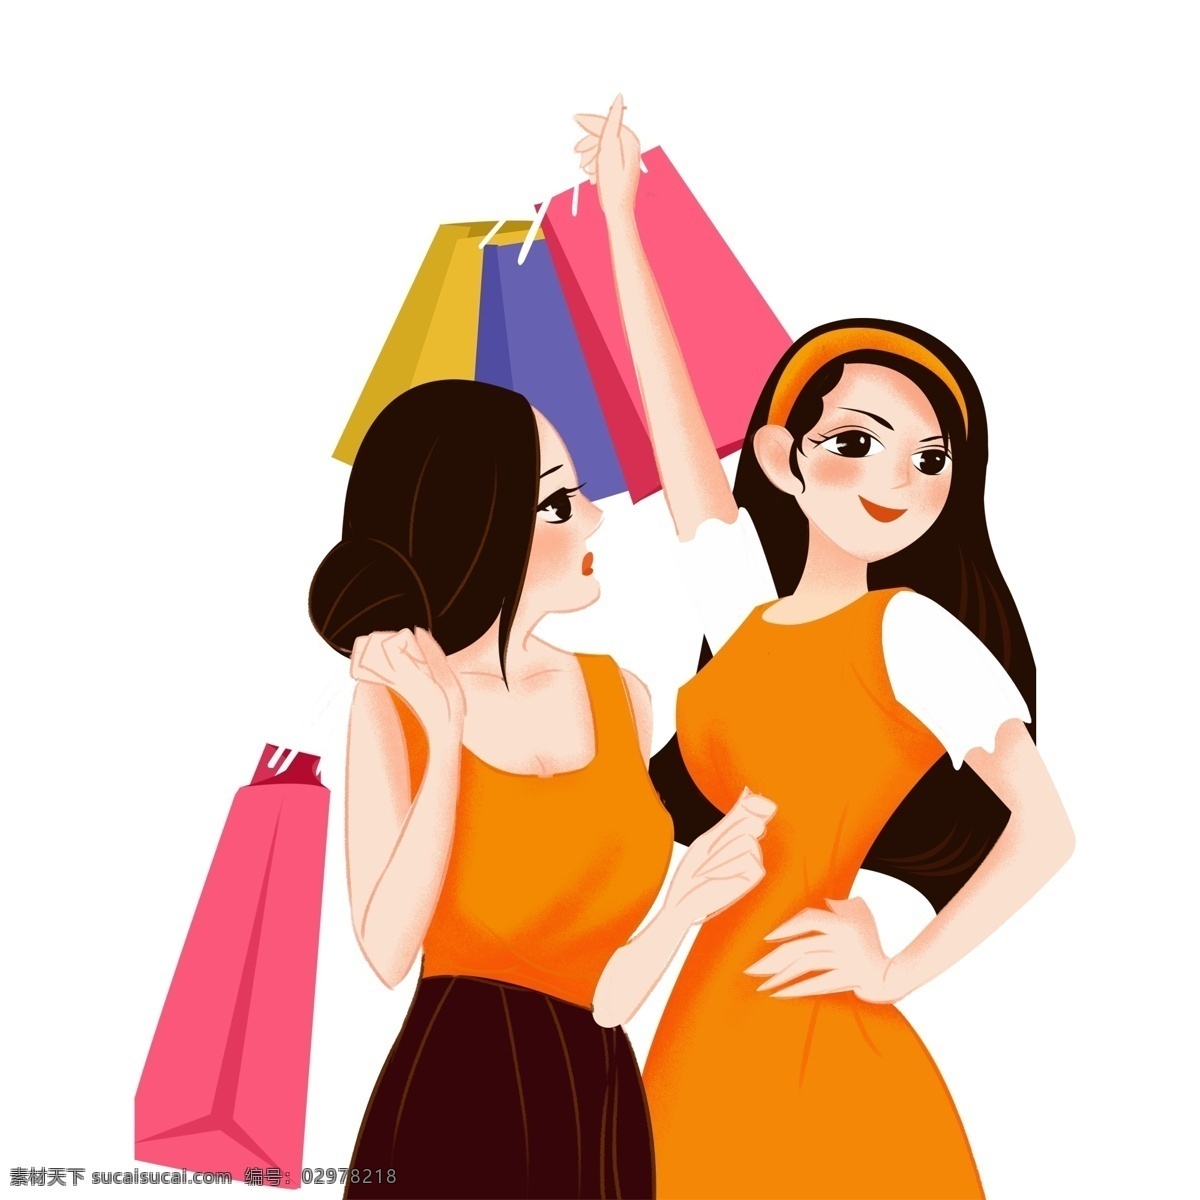 两个 女孩 购物 免 抠 图 袋子 时尚女孩 漂亮的女孩 卡通人物 动漫人物 可爱 裙子 头饰 黄色 衣服 姑娘